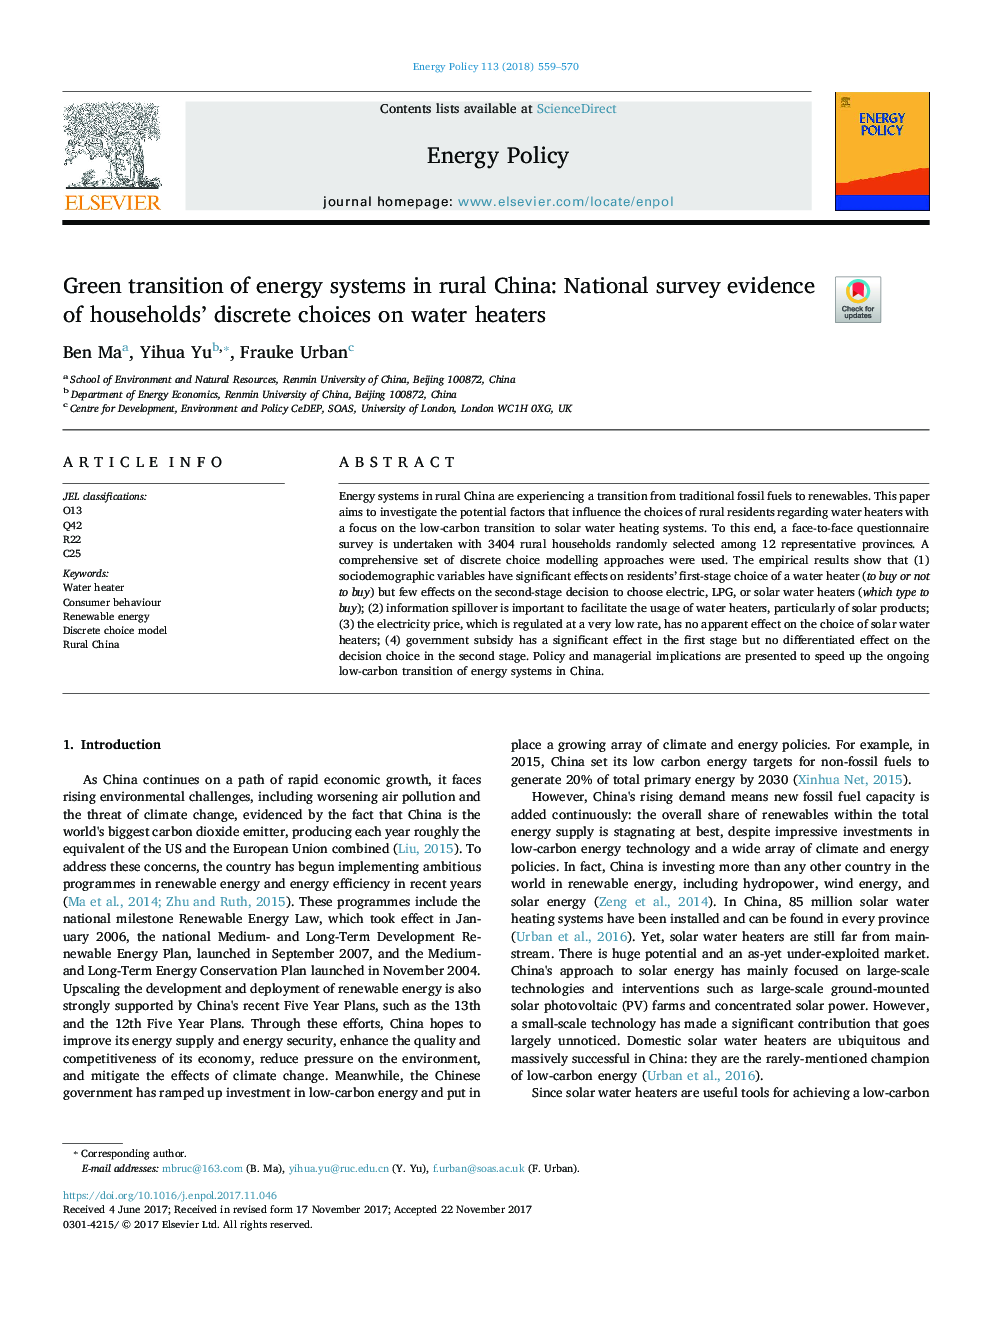 انتقال سبز سیستم های انرژی در روستایی چین: شواهد ملی در مورد انتخاب های گوناگون خانوار در آبگرمکن 